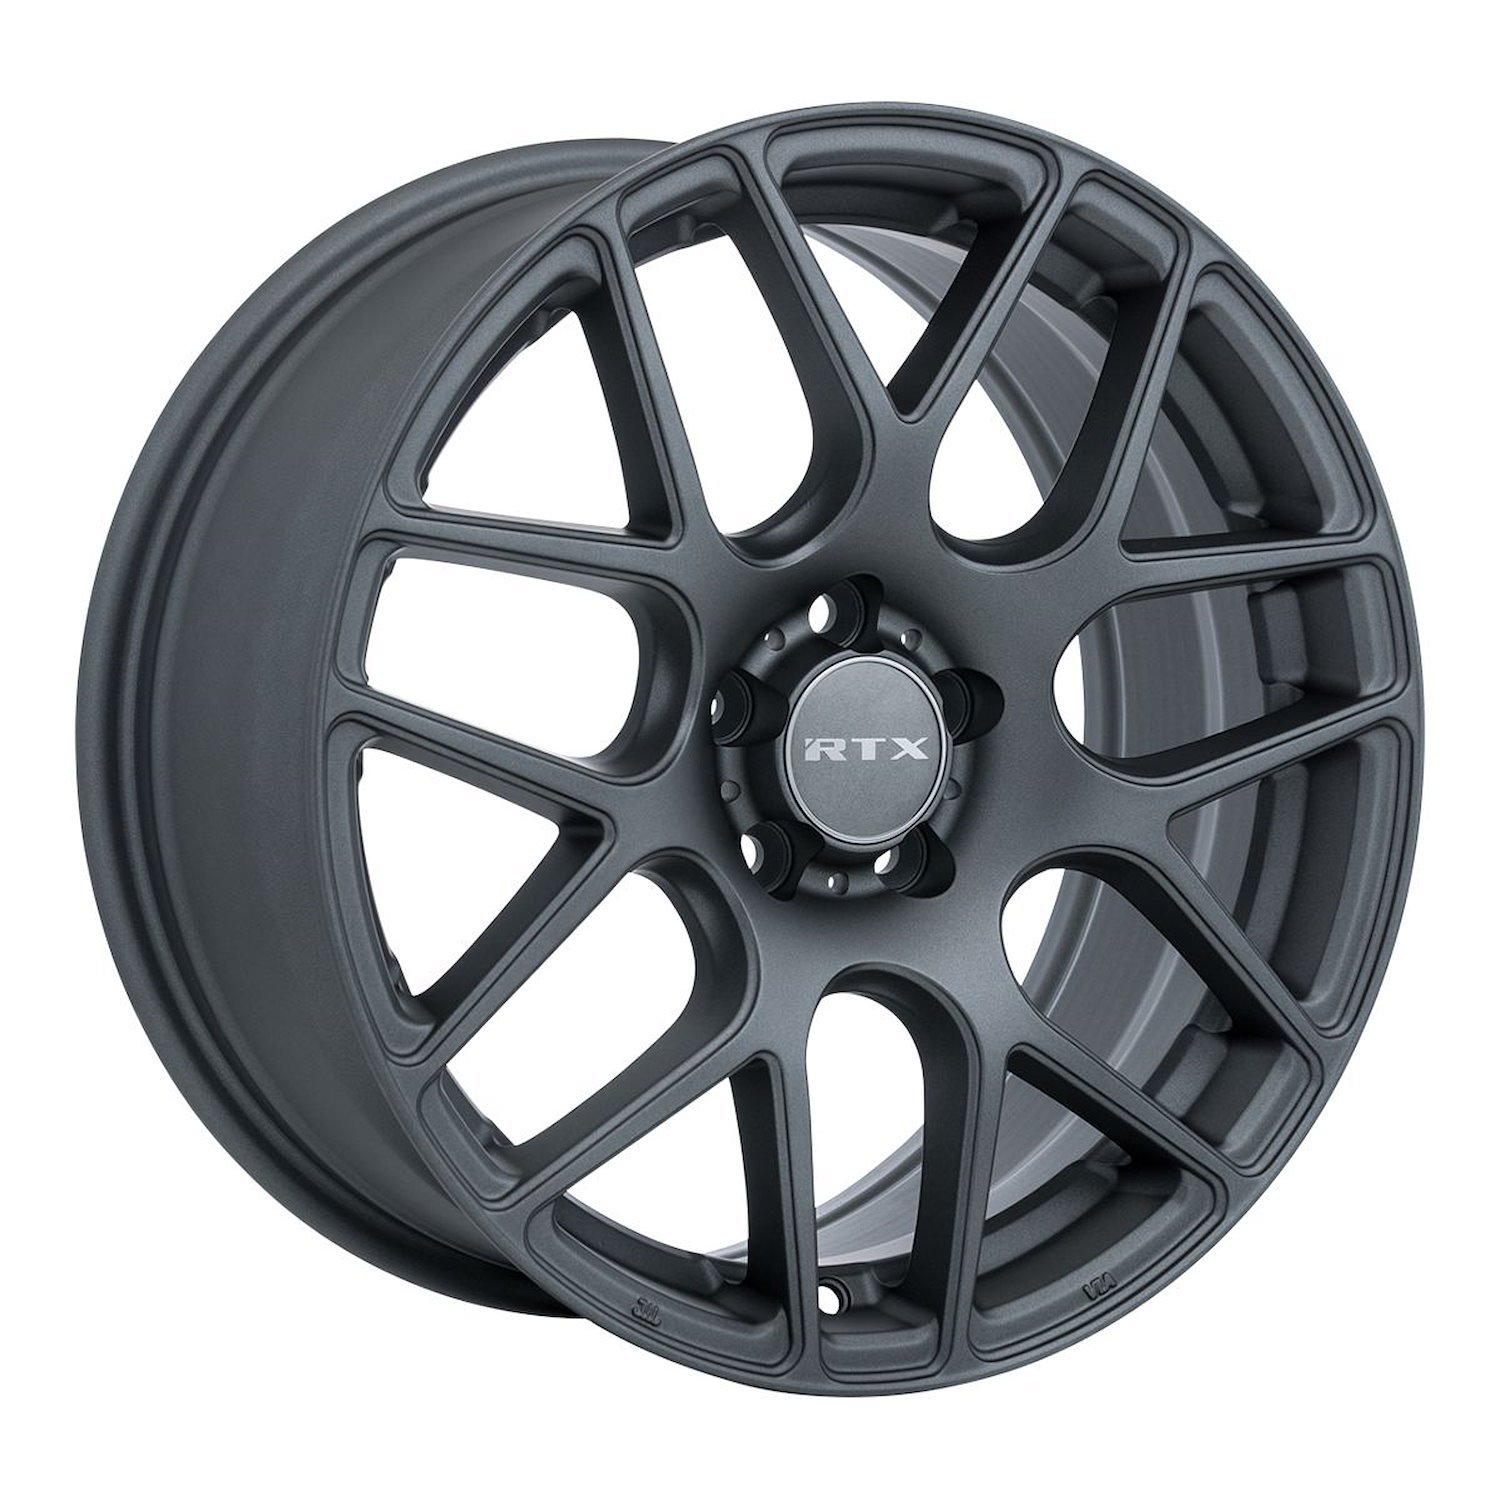 082788 RTX-Series Envy Wheel [Size: 19" x 8.50"] Matte Gunmetal Finish